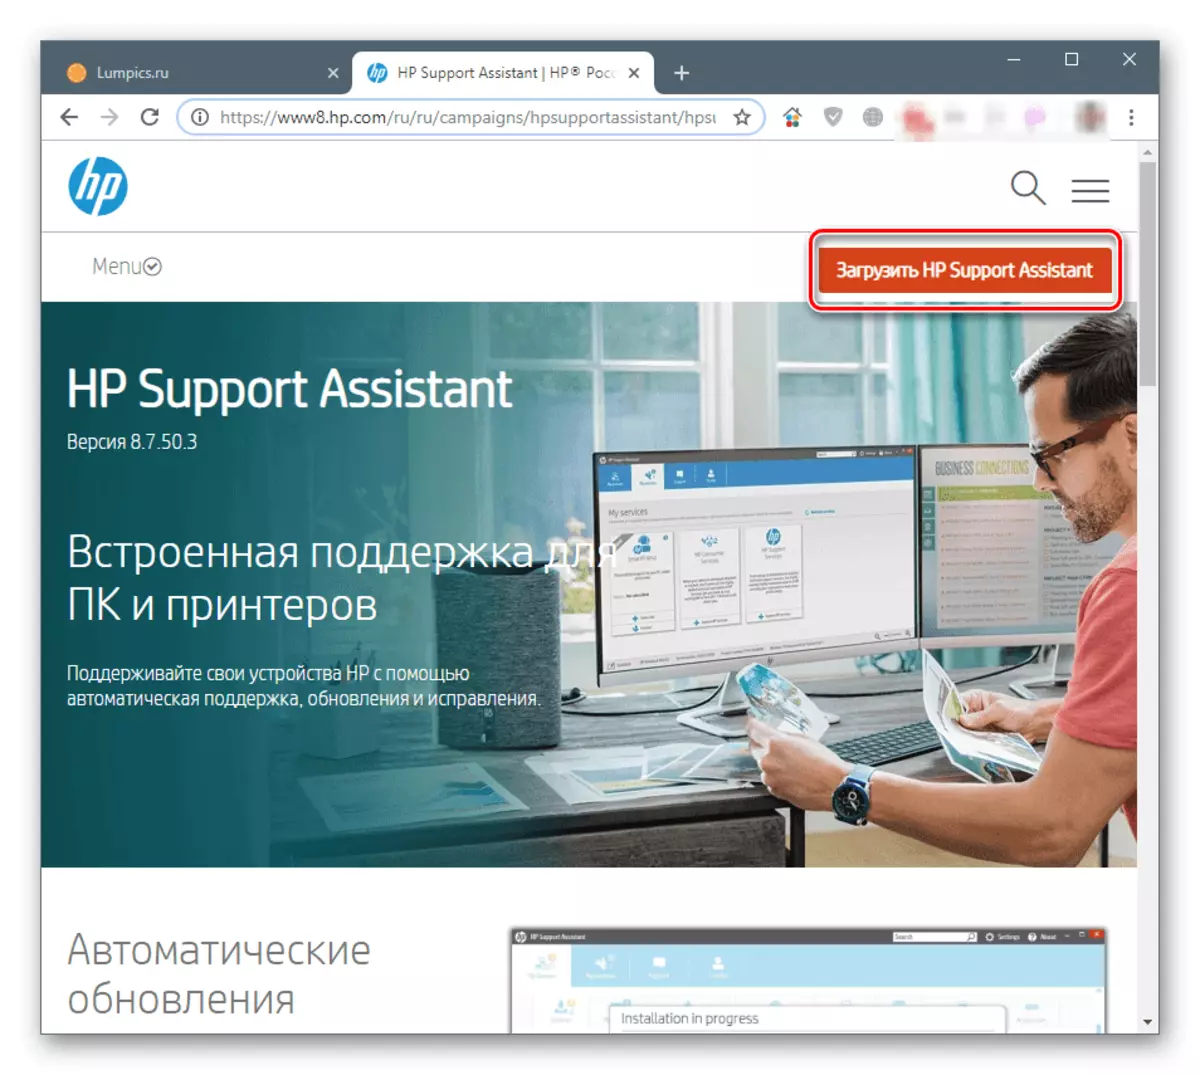 Laden Sie den HP Support Assistant von der offiziellen Website herunter